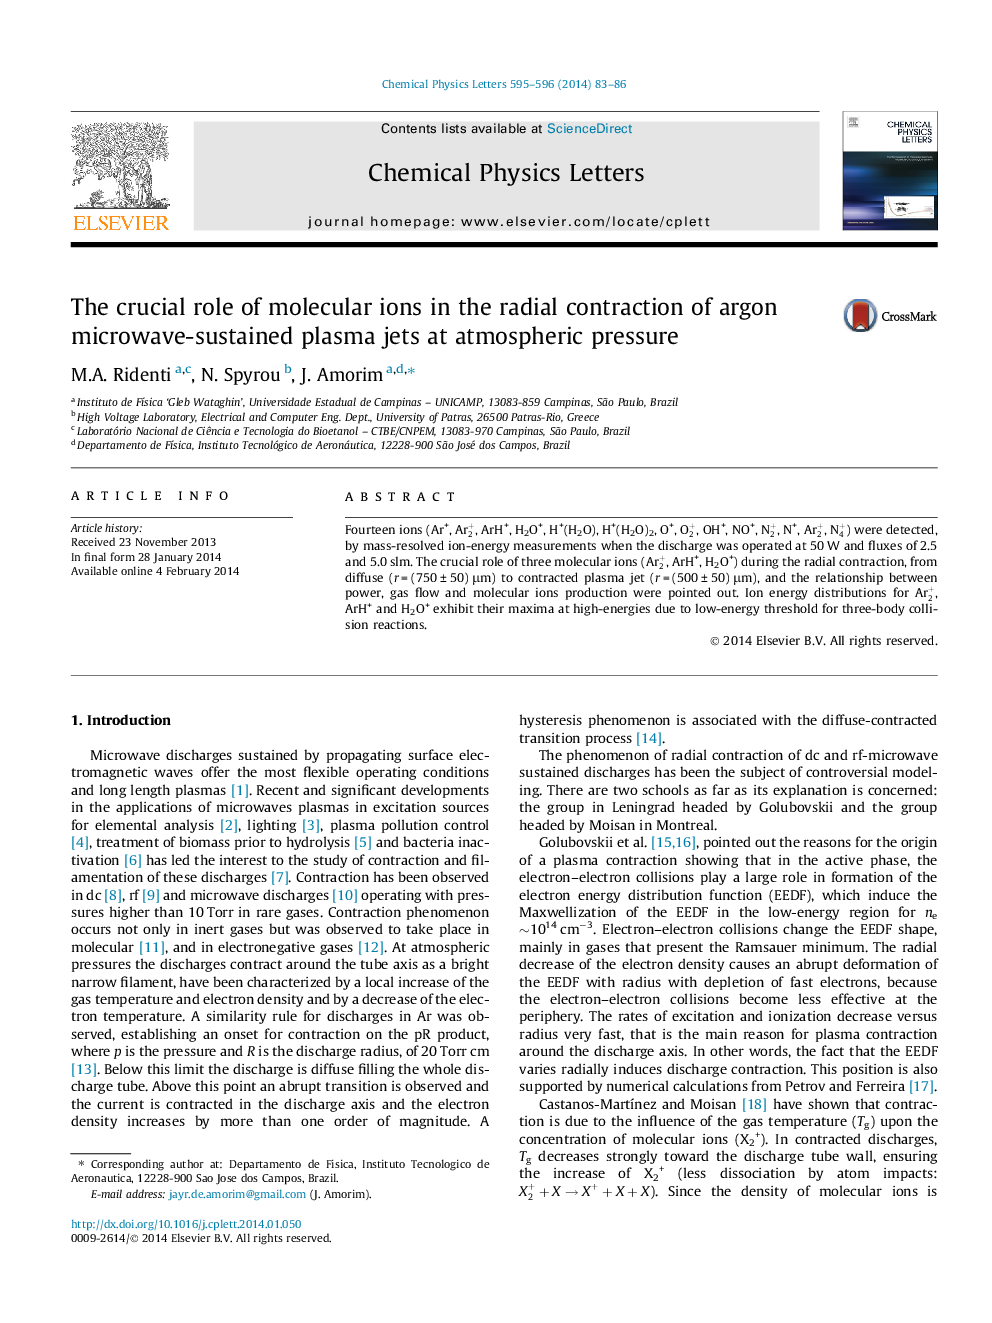 نقش حیاتی یون های مولکولی در انقطاع شعاعی جت های پلاسمای مایکروویو آرگون با فشار اتمسفری 